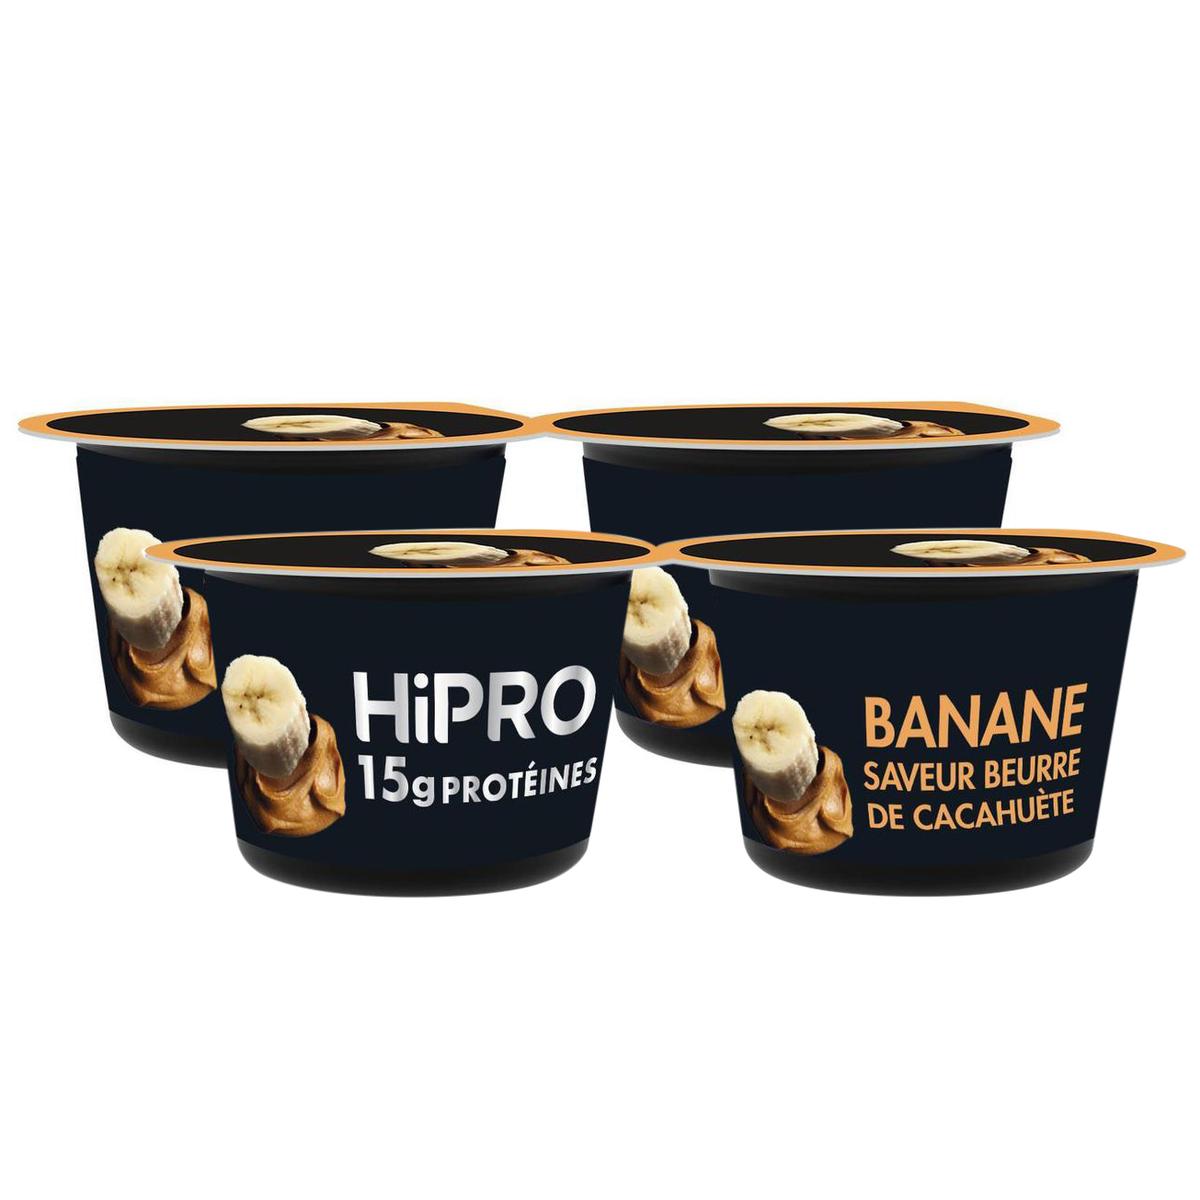 Promotion HiPRO Yaourt Banane Saveur Beurre de Cacahuetes, Lot de 2 packs  de 2x160g